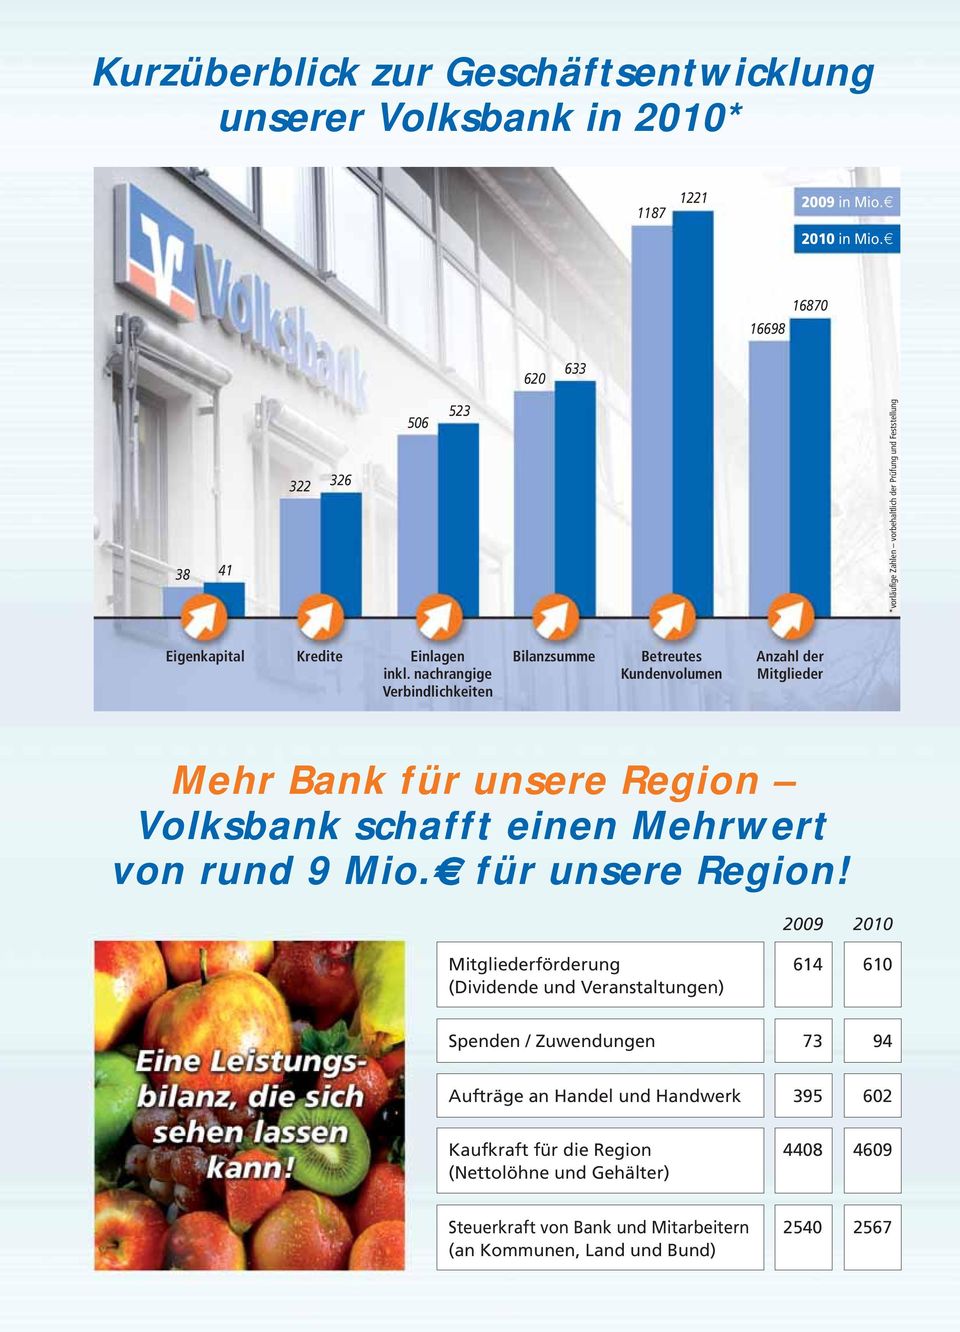 nachrangige Verbindlichkeiten Bilanzsumme Betreutes Kundenvolumen Anzahl der Mitglieder Mehr Bank für unsere Region Volksbank schafft einen Mehrwert von rund 9 Mio.